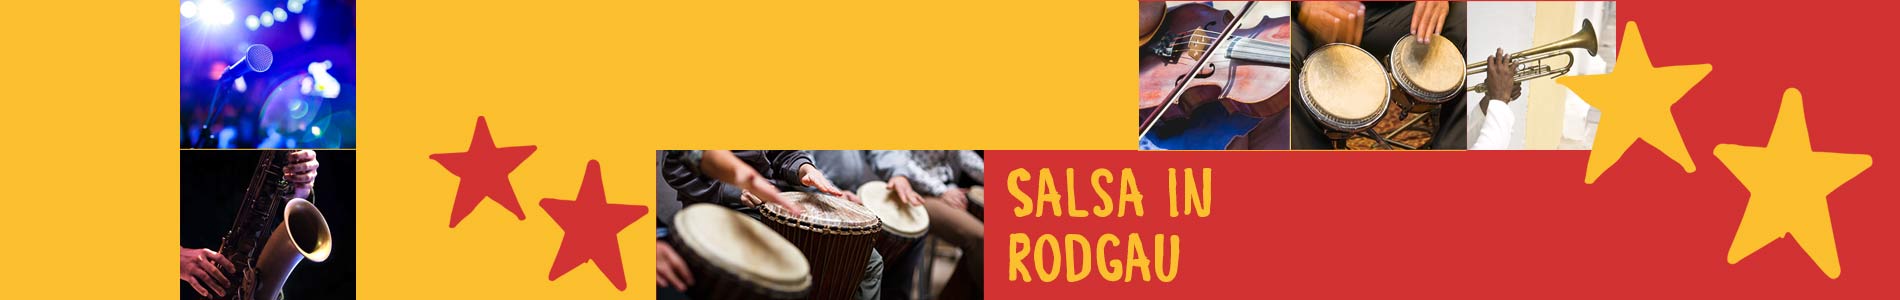 Salsa in Rodgau – Salsa lernen und tanzen, Tanzkurse, Partys, Veranstaltungen